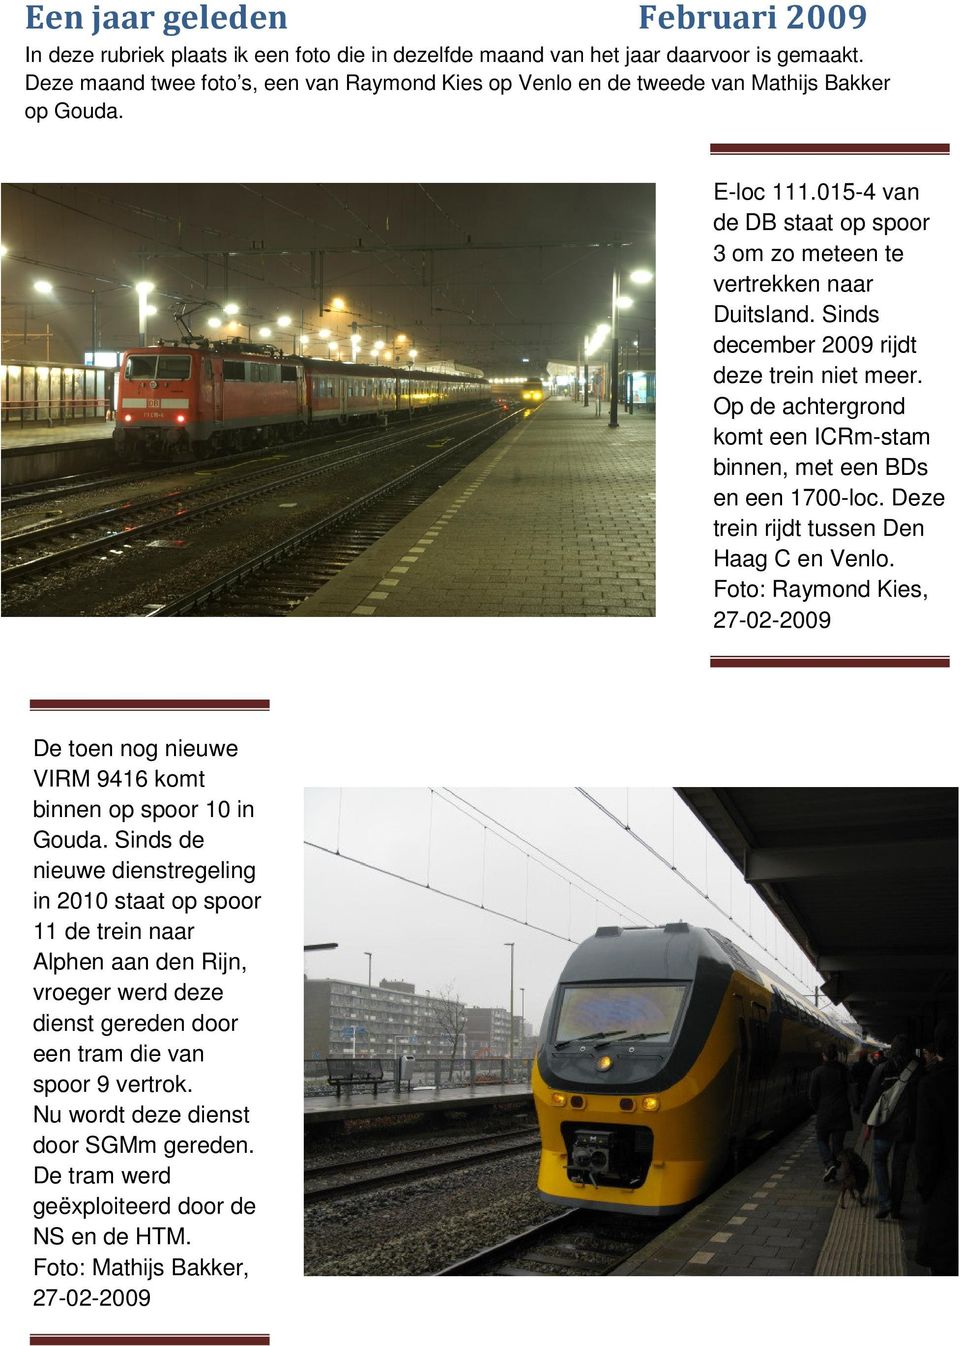 Sinds december 2009 rijdt deze trein niet meer. Op de achtergrond komt een ICRm-stam binnen, met een BDs en een 1700-loc. Deze trein rijdt tussen Den Haag C en Venlo.